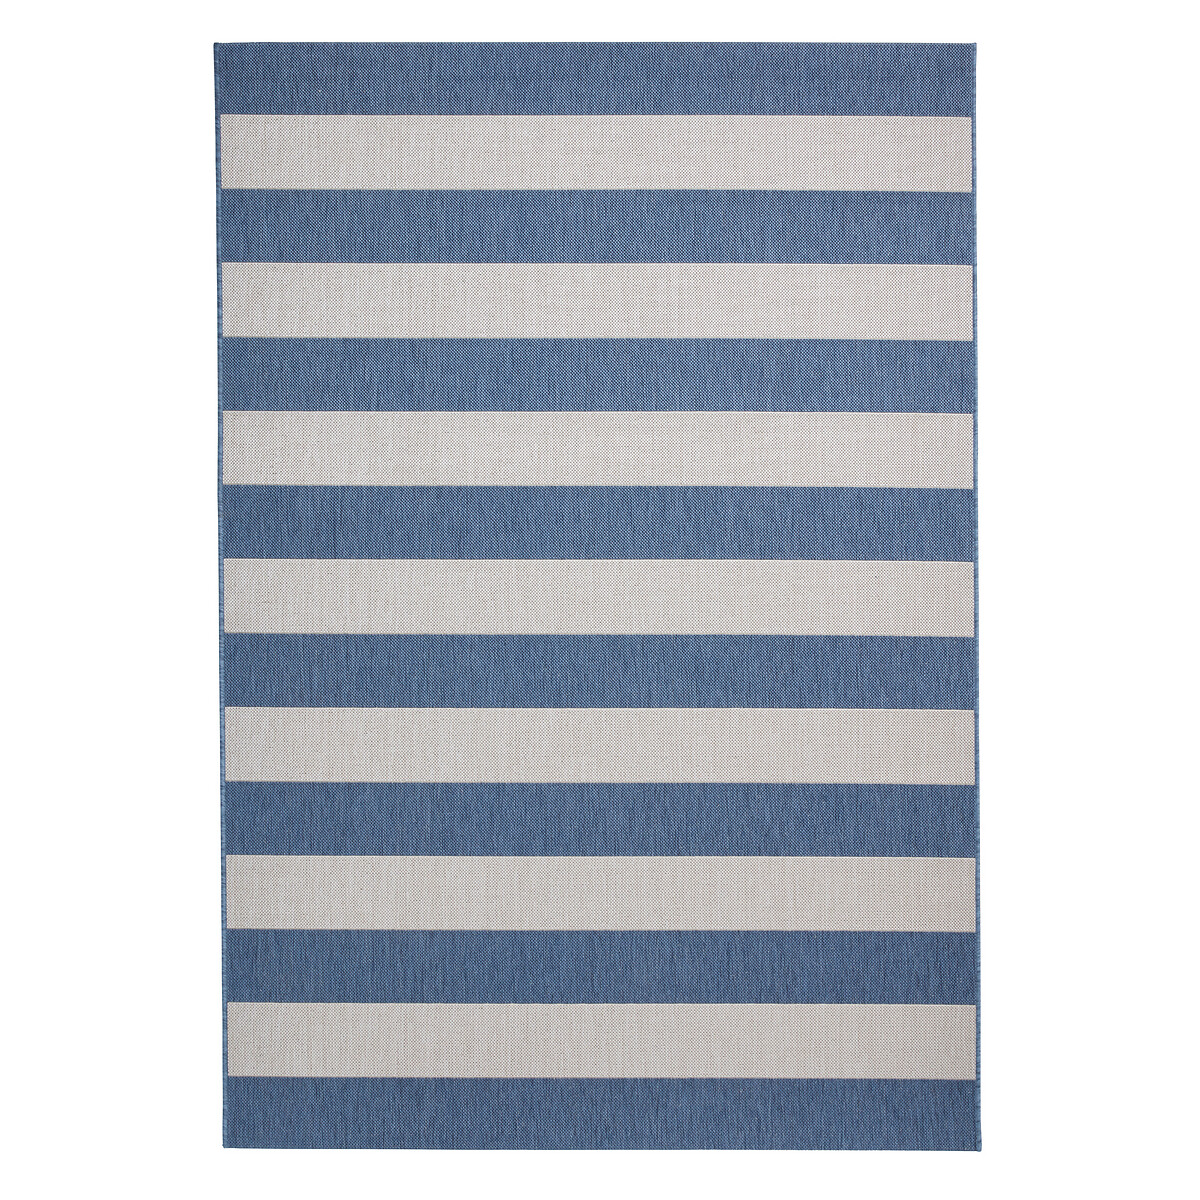 La Redoute vend un tapis bleu et blanc à 85 £